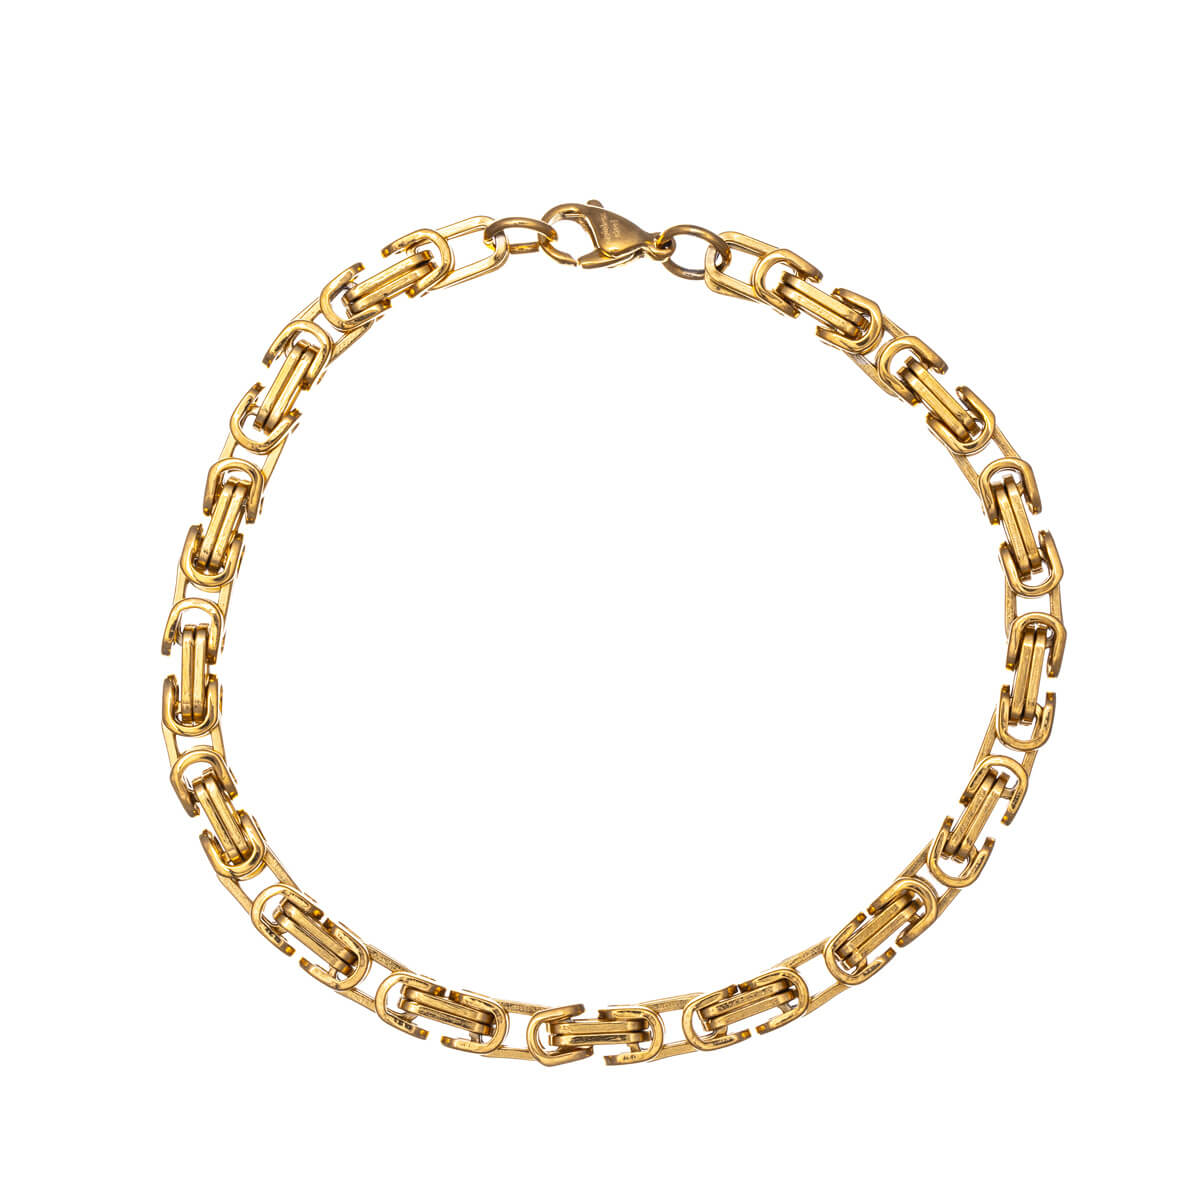 Byzantine steel chain bracelet 22cm (Steel 316L)